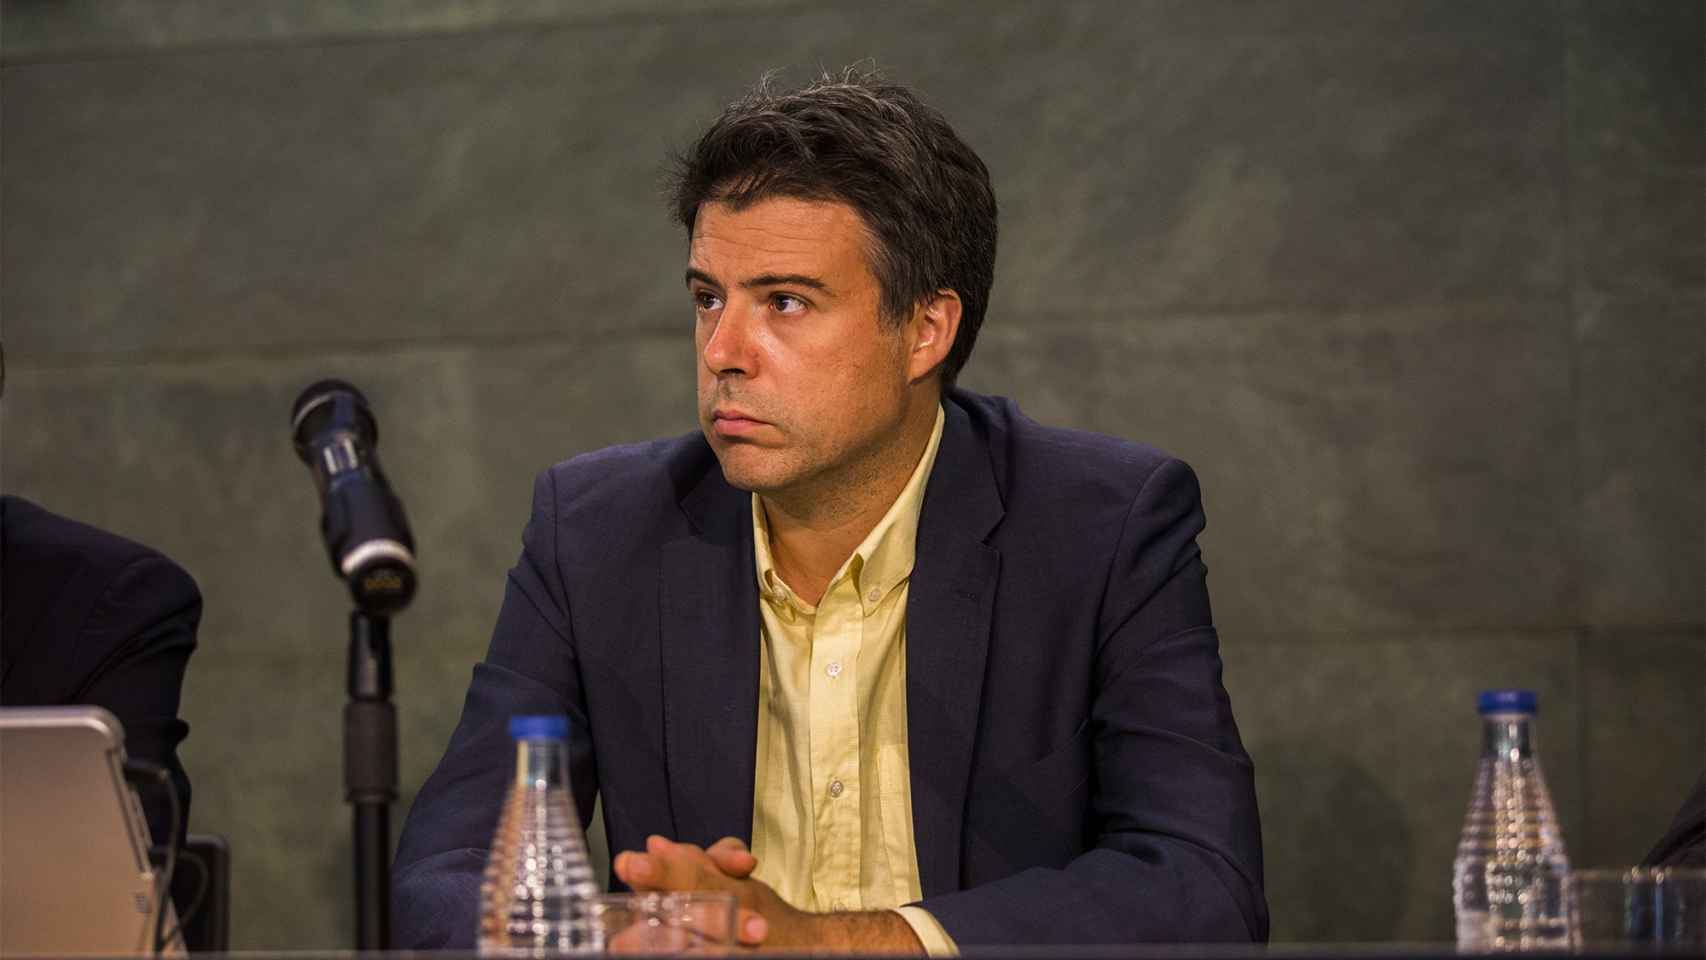 Víctor Gómez Frías, militante del PSOE desde 2011 al que han abierto un expediente disciplinario. / Pablo Cobos